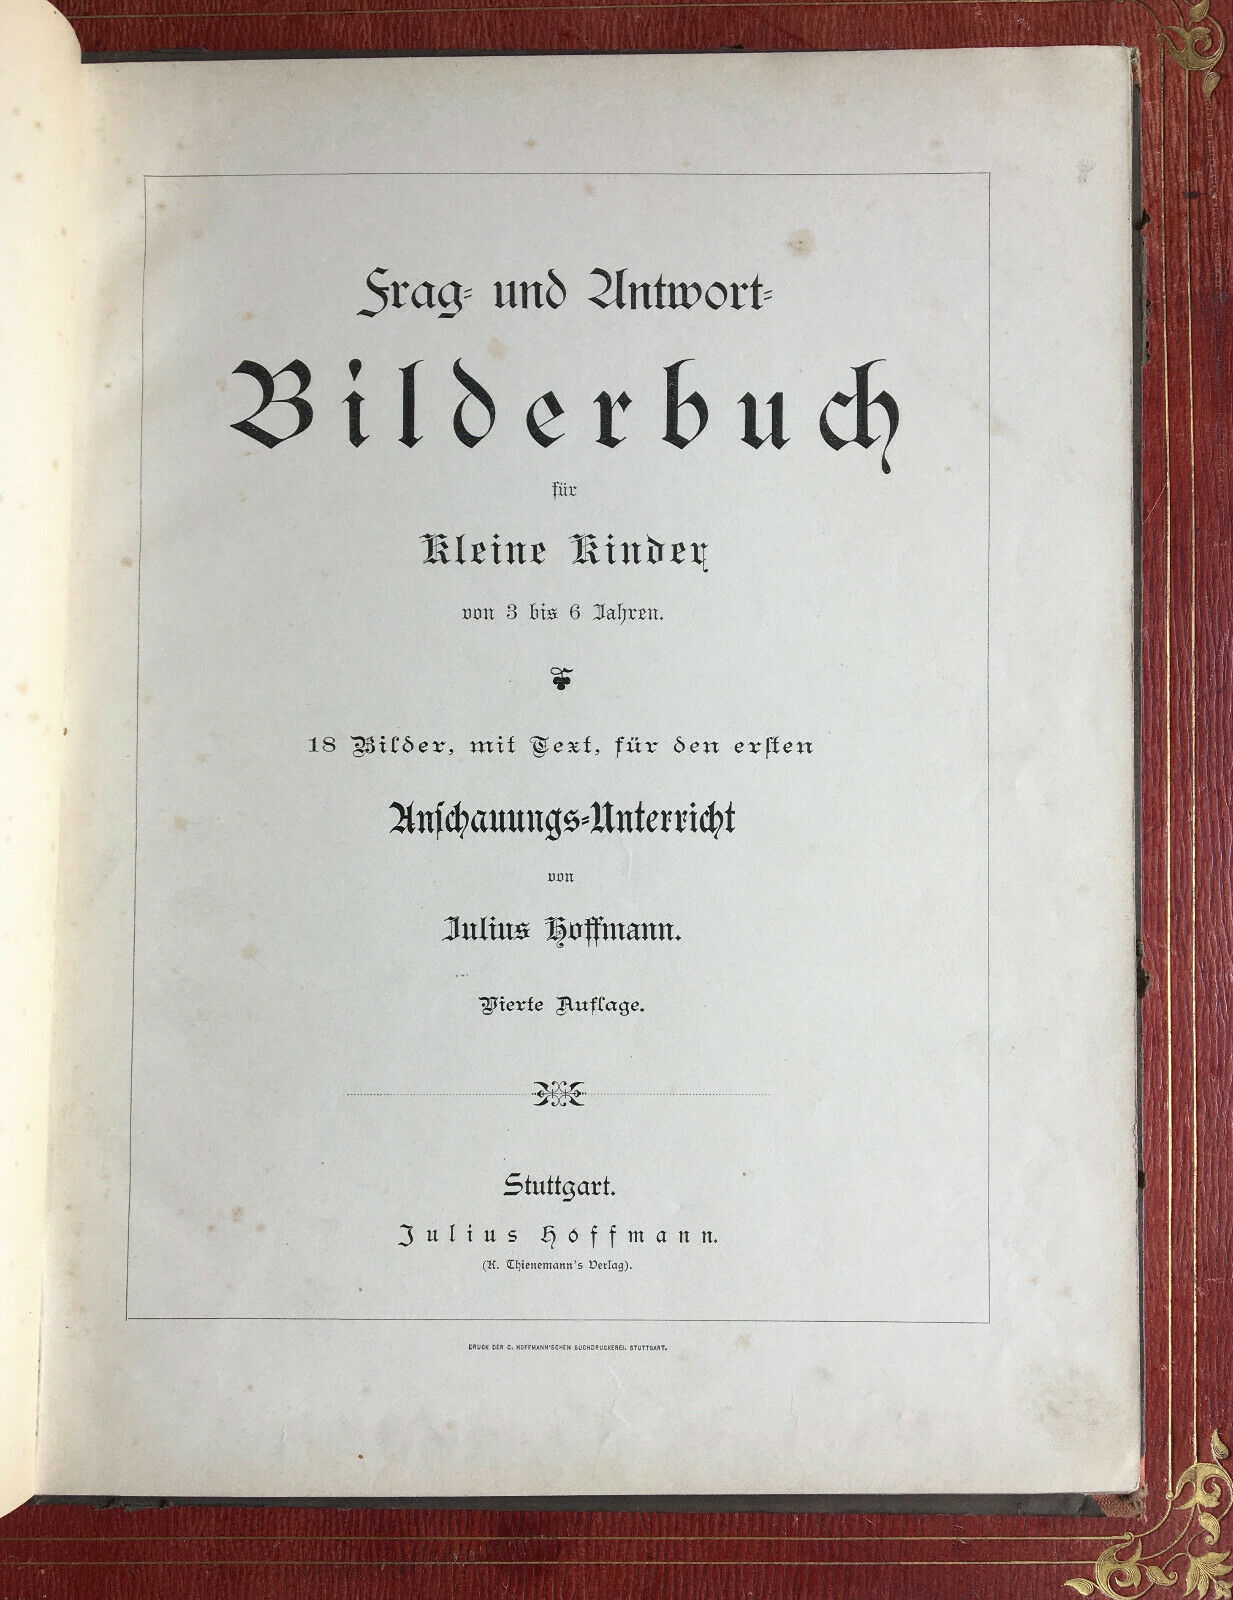 HOFFMANN - BILDERBUCH FÜR KLEINE KINDER - 18 LITHOGRAPHIC PLATES - [1883].